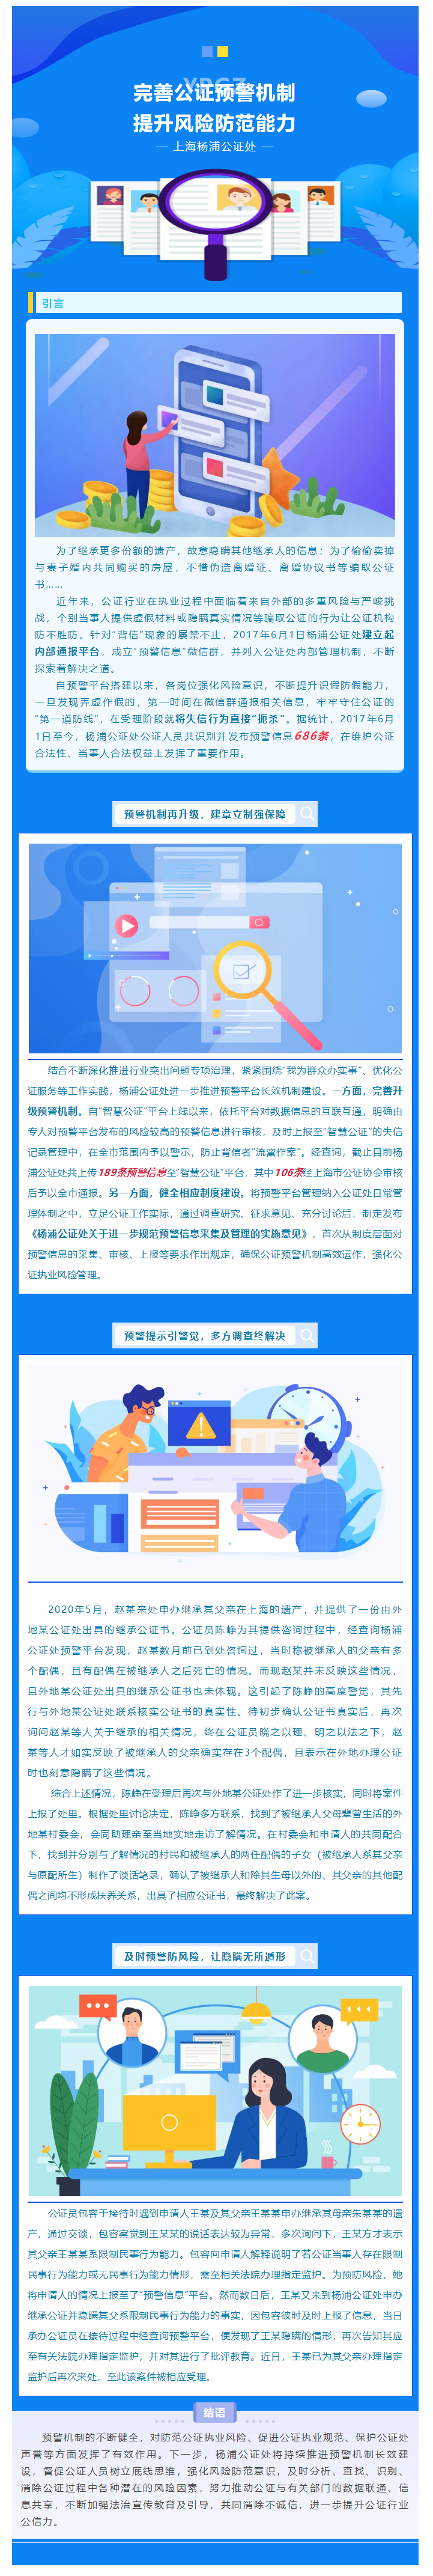 杨浦公证处完善公证预警机制，严守公证风险防线.png